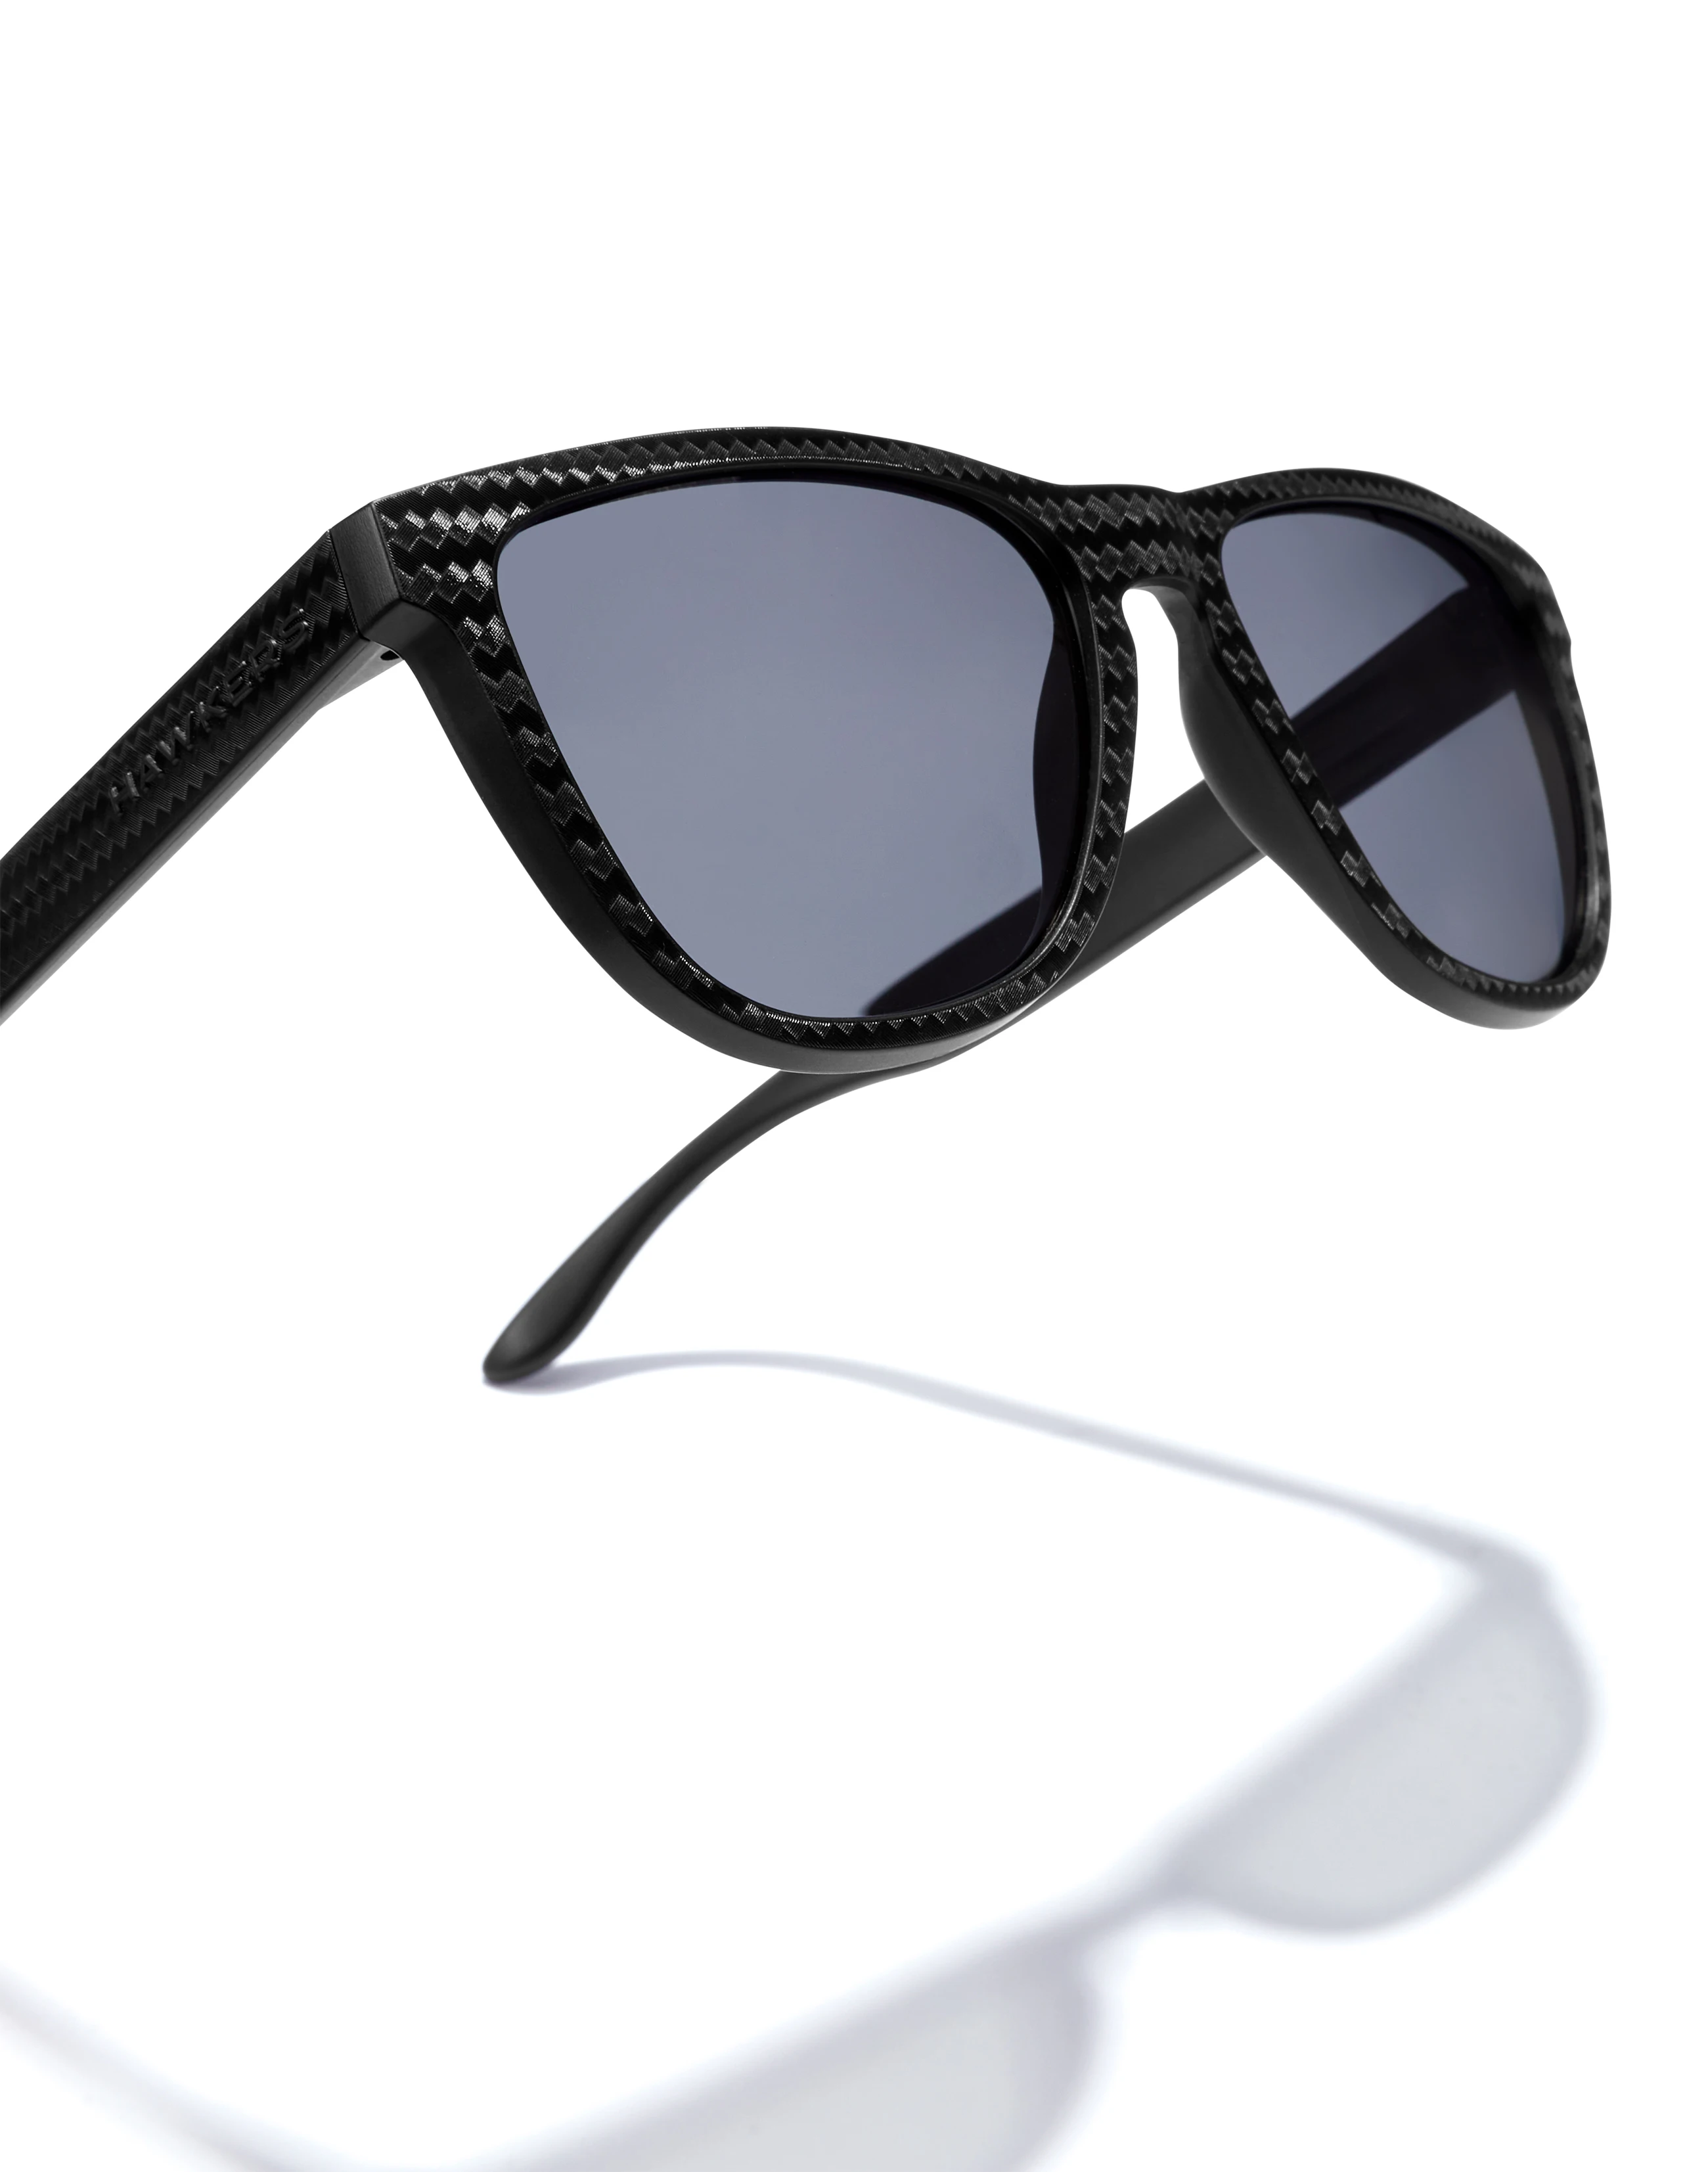 Luxottica | Accessories | Luxottica Large Sunglasses Frames Ricardo Natural  Silver Square 58240 | Poshmark